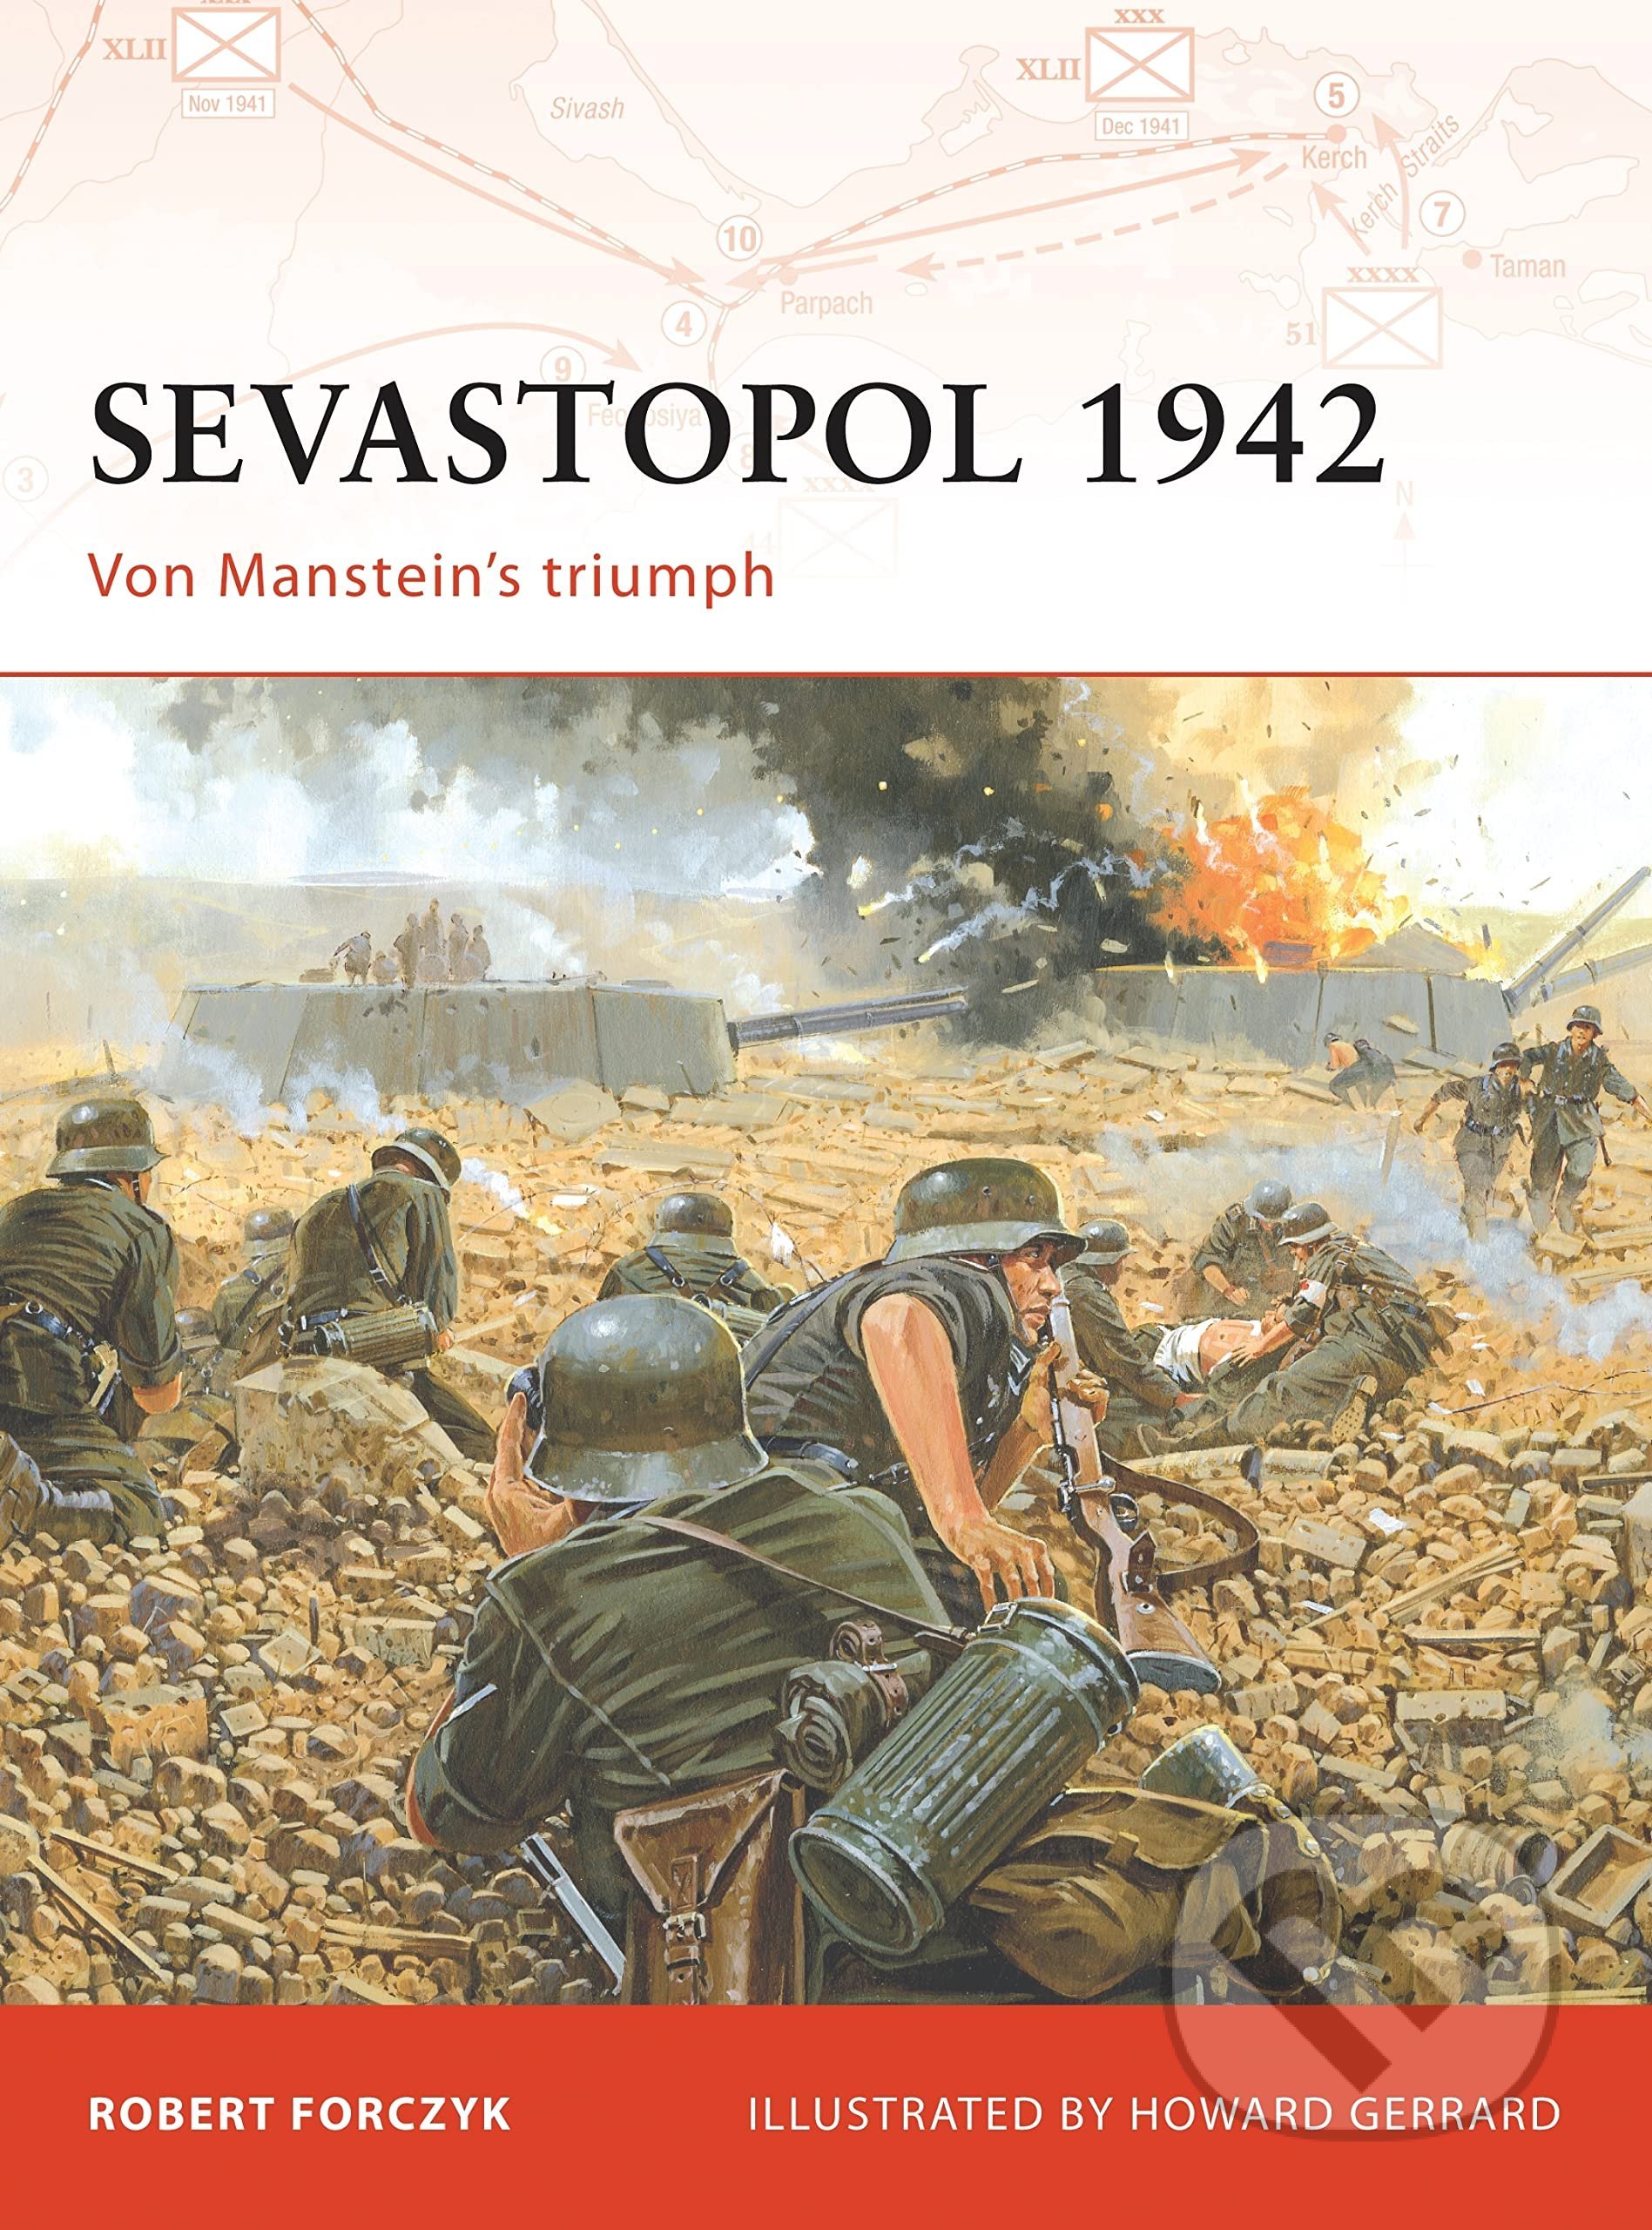 Sevastopol 1942 - Robert Forczyk, Howard Gerrard (Ilustrátor), Osprey Publishing, 2008